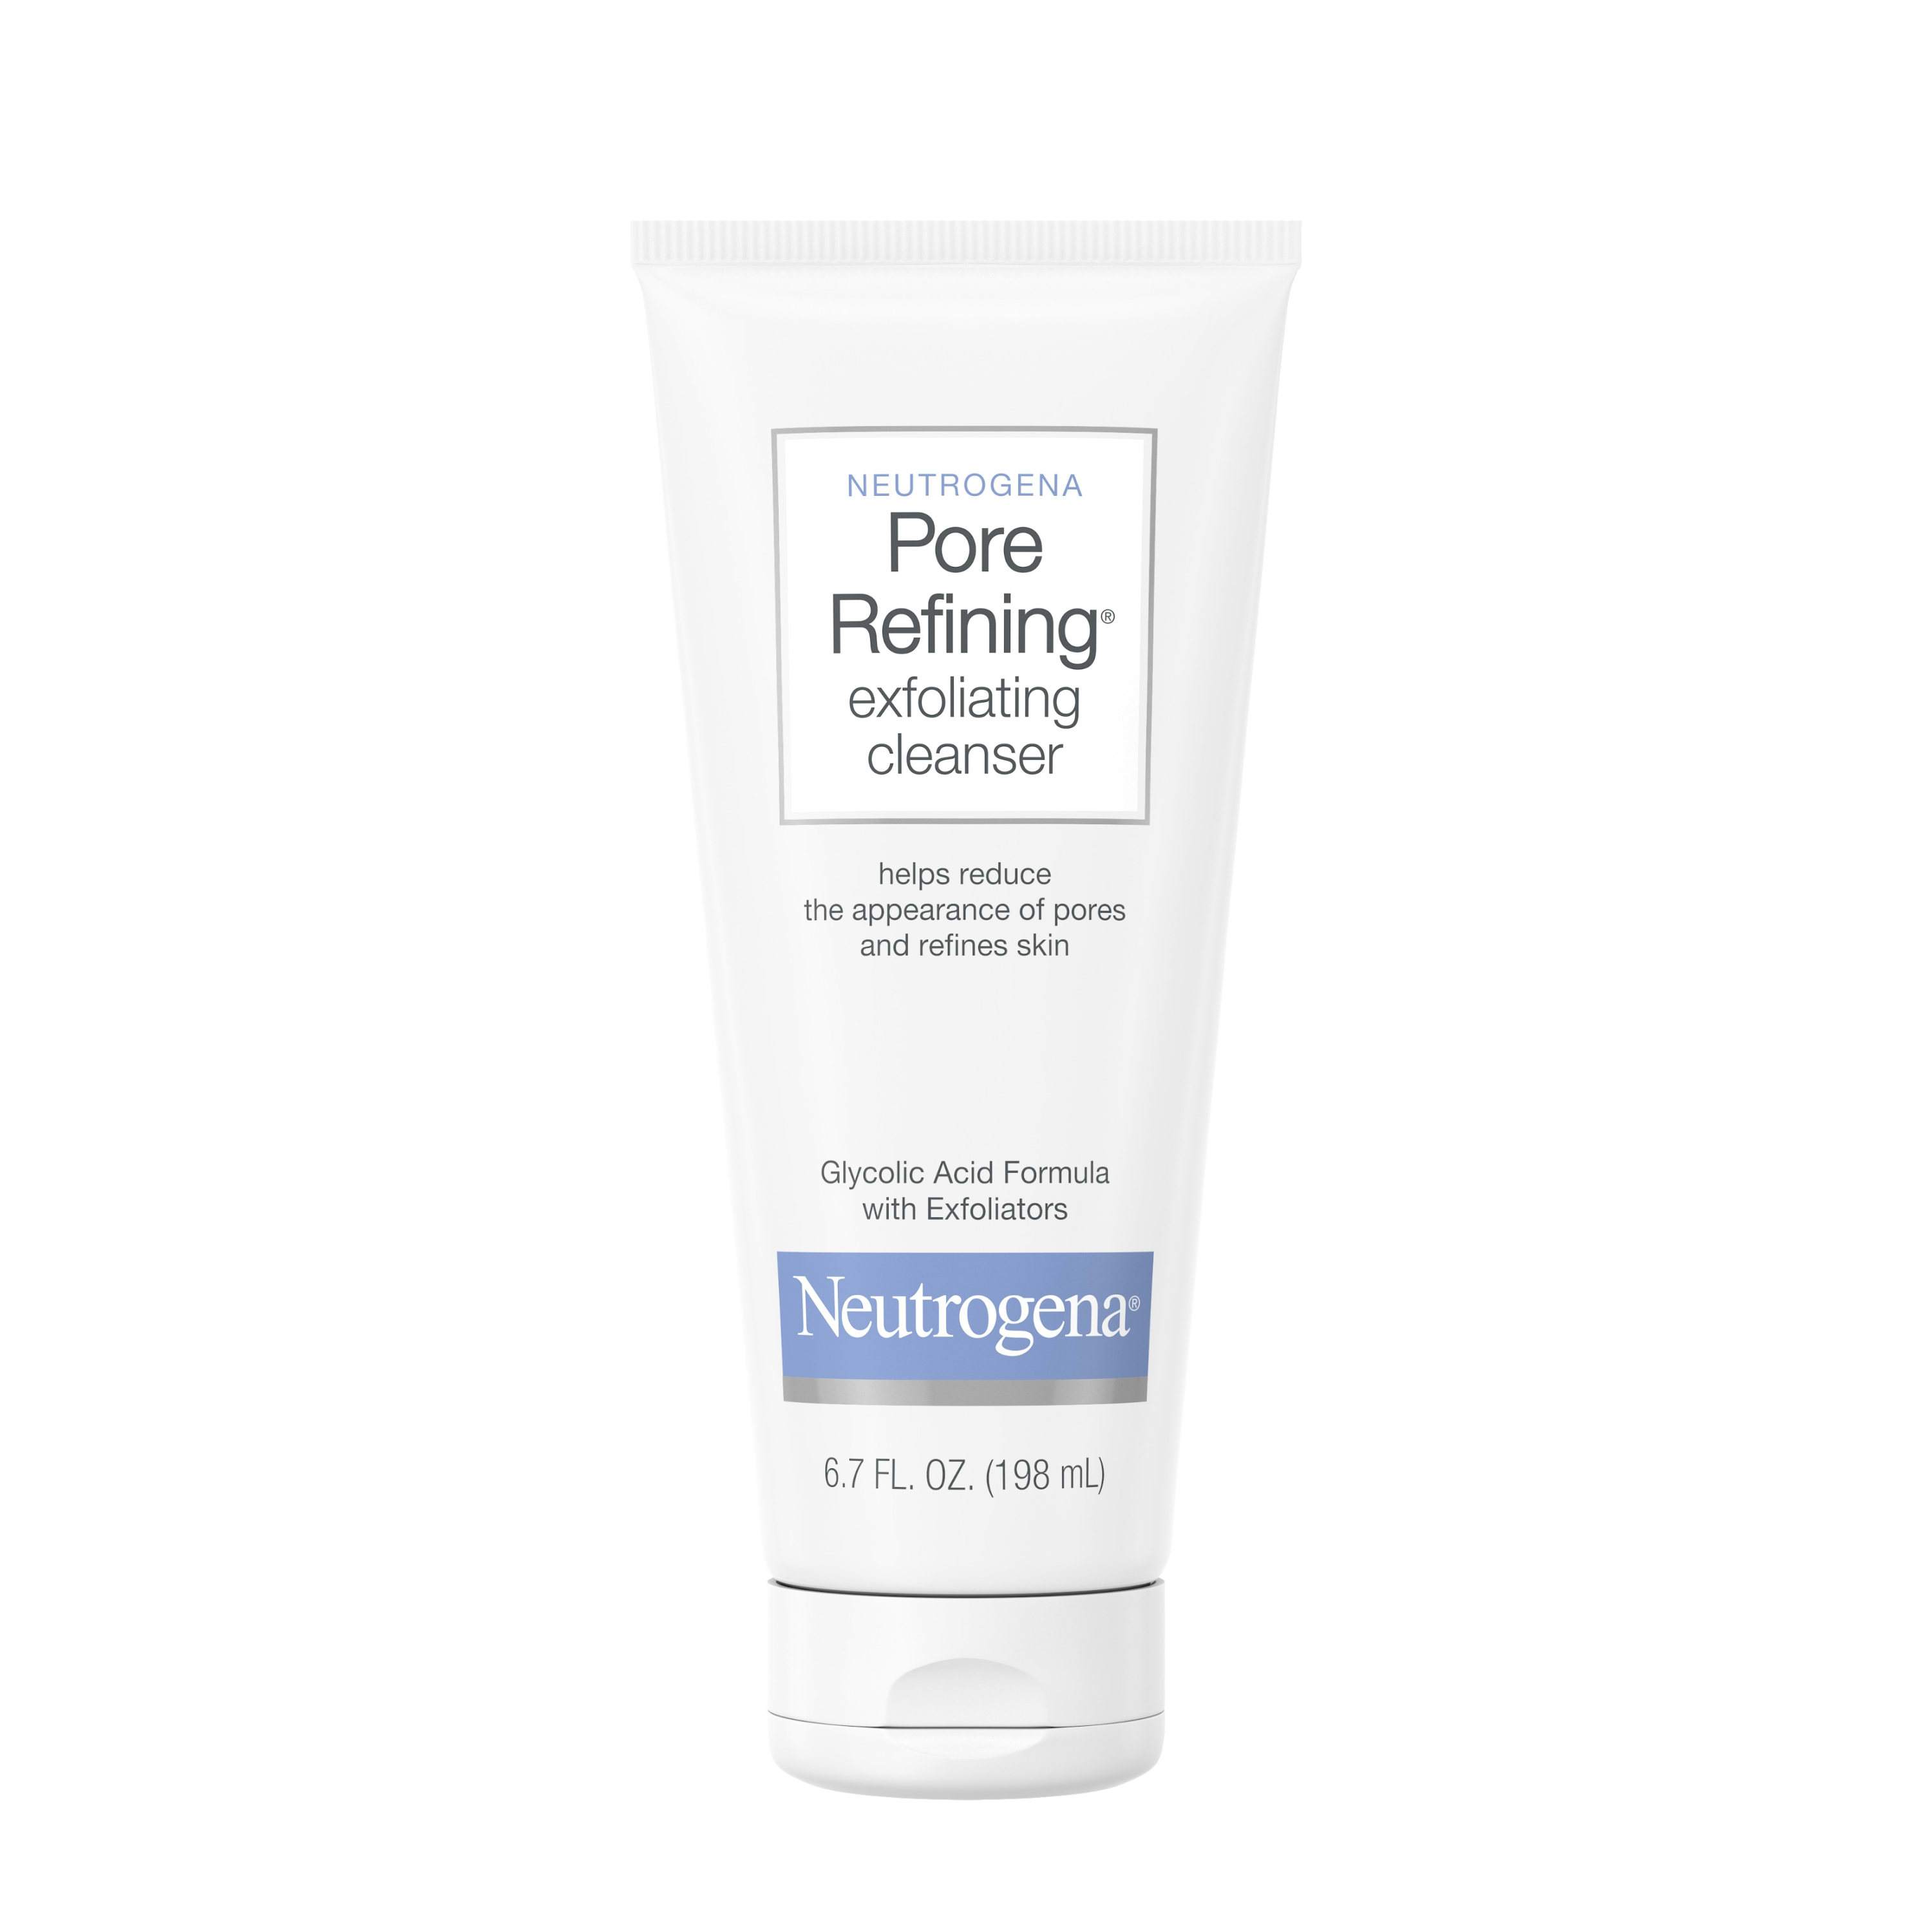 Neutrogena Pore Refining Exfoliating Daily Facial Cleanser, 6.7 fl. oz - image 4 of 9